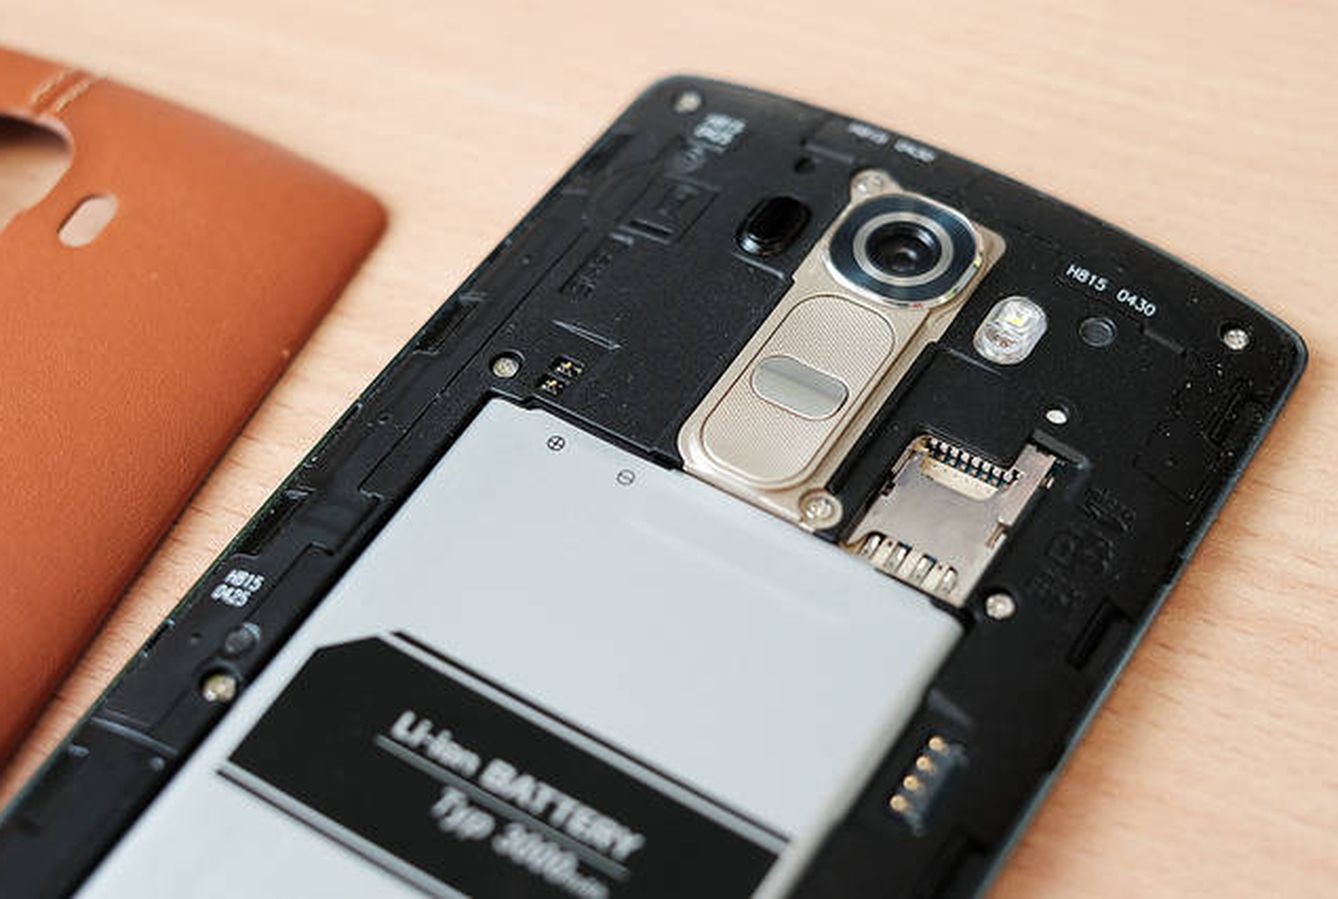 Las baterías, cargadores y tarjetas de memoria también son presa de los falsificadores, según la OCDE. (Flickr)